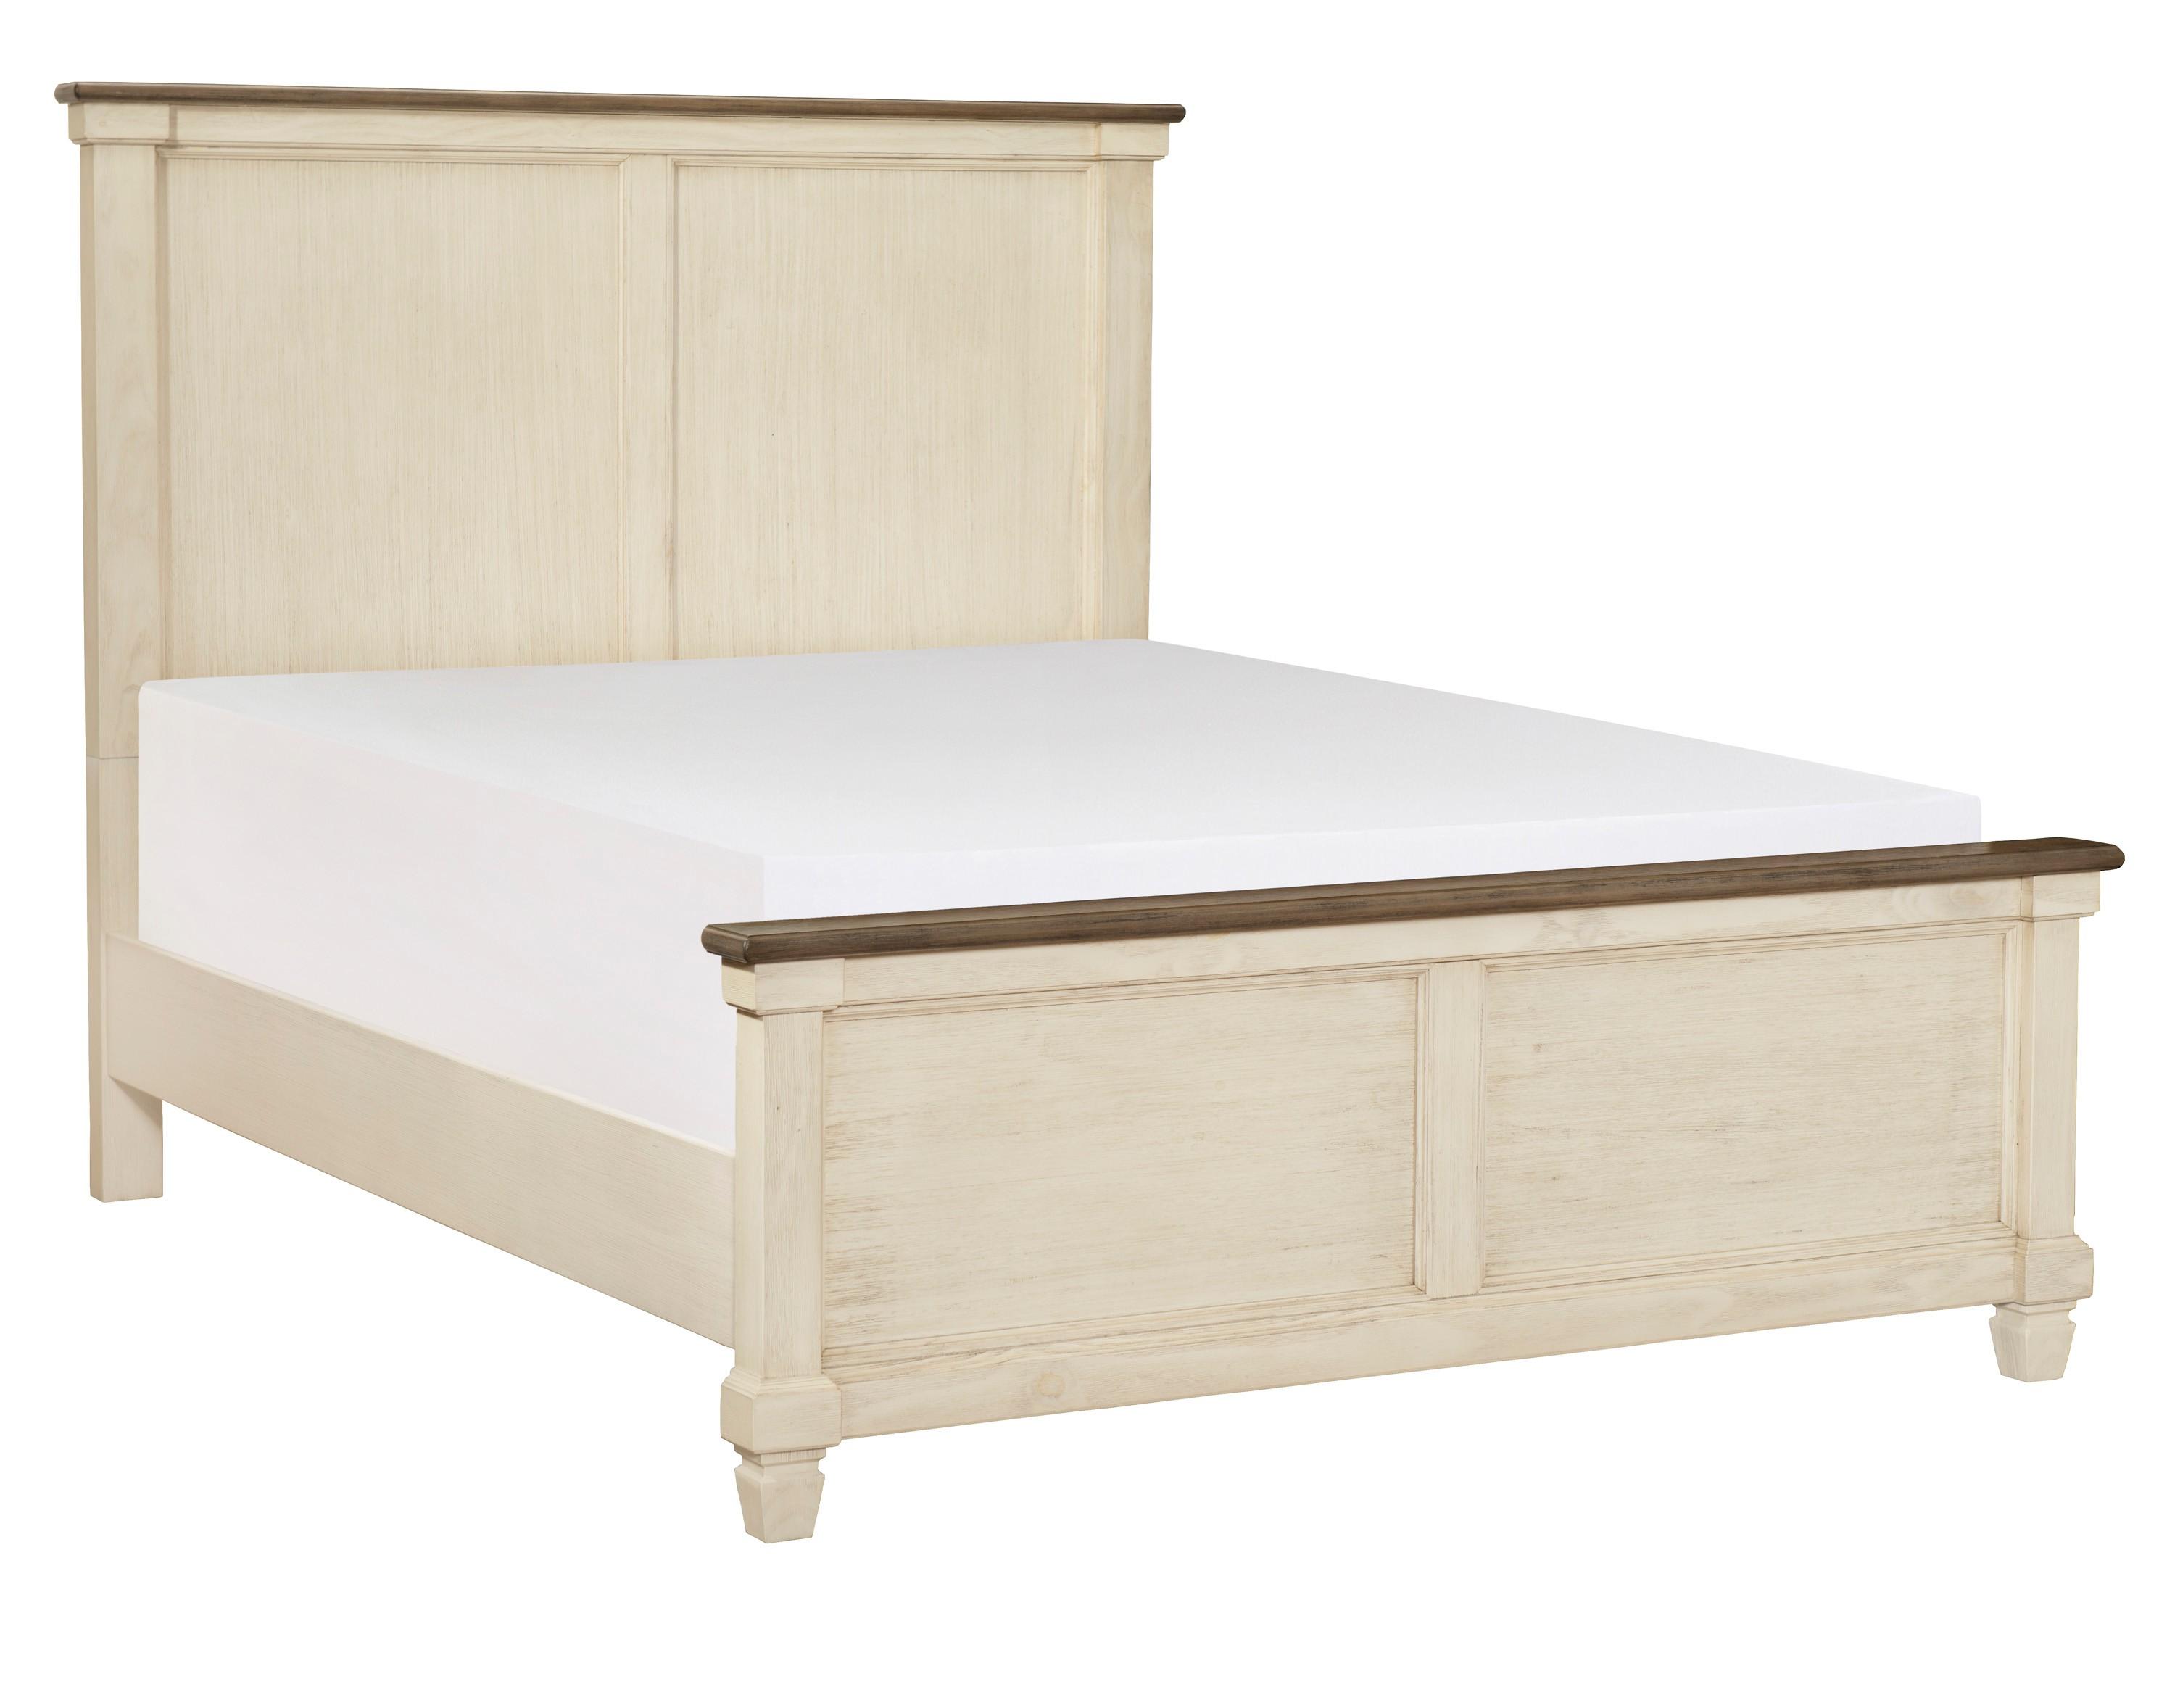 

    
Transitional Antique White & Rosy Brown Wood CAL Bedroom Set 5pcs Homelegance 1626K-1CK* Weaver
